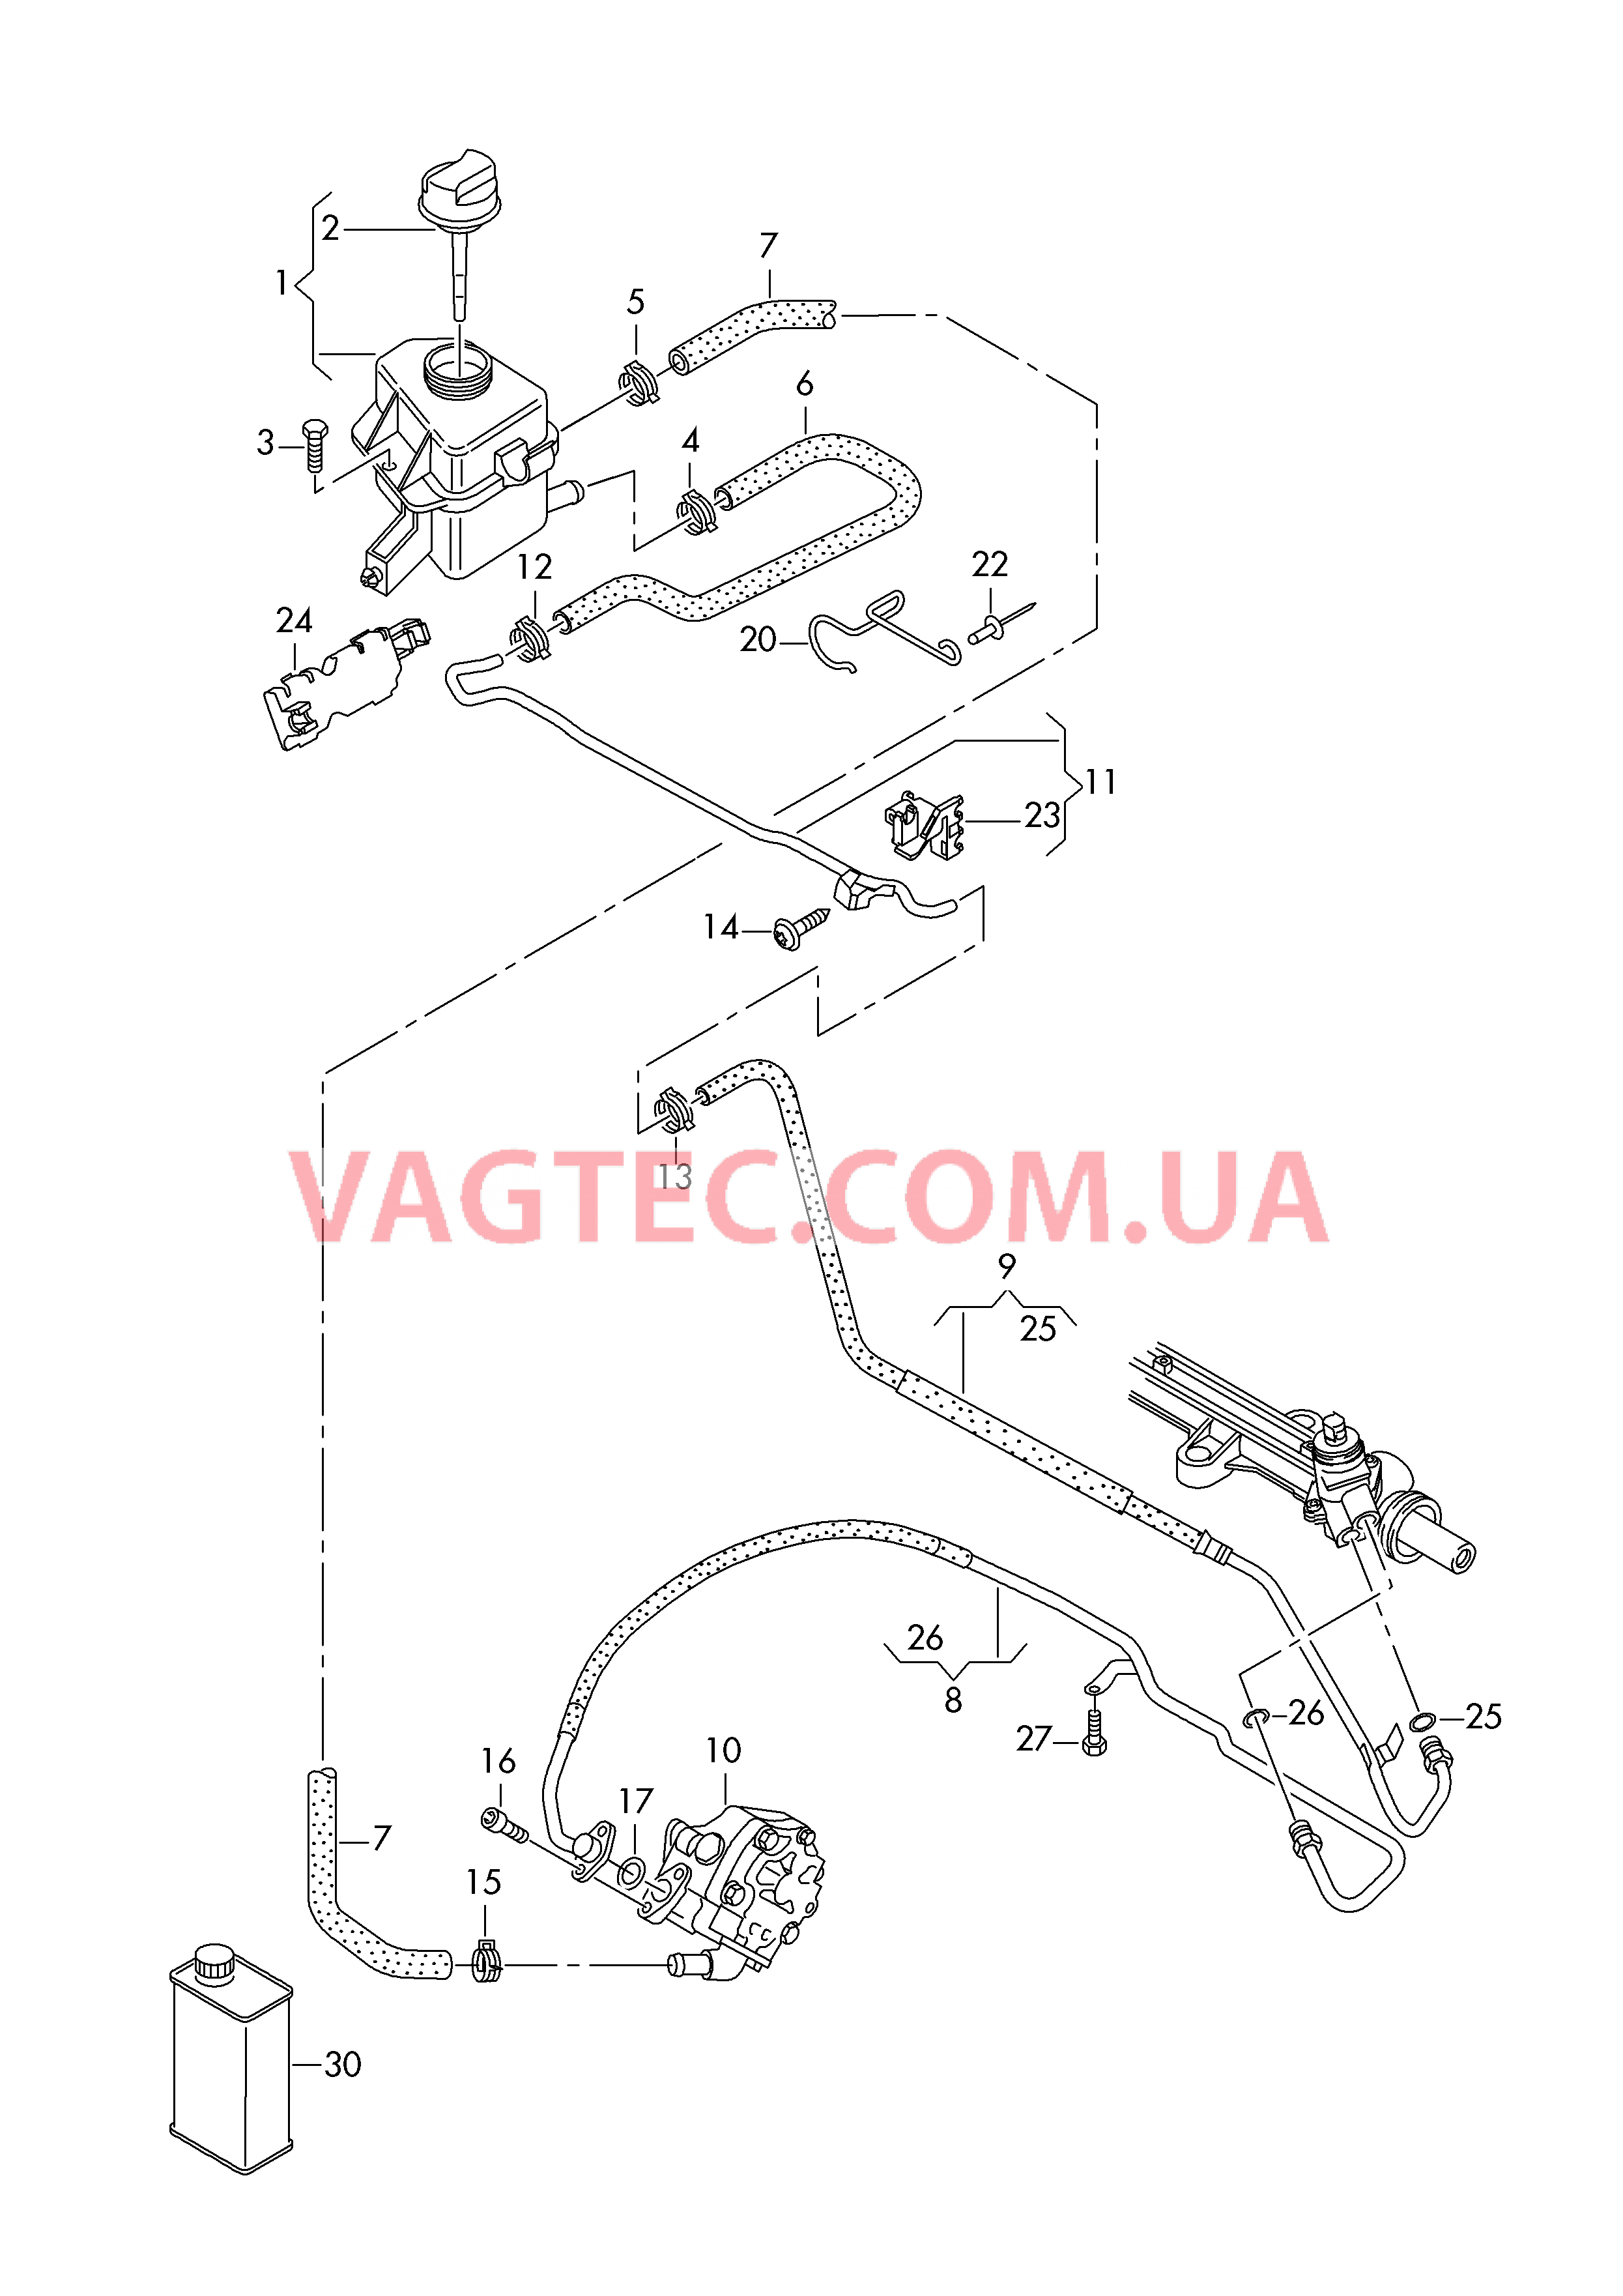 Масляный бачок с соединительными деталями, шлангами  для ГУРа  для VOLKSWAGEN Transporter 2017-1